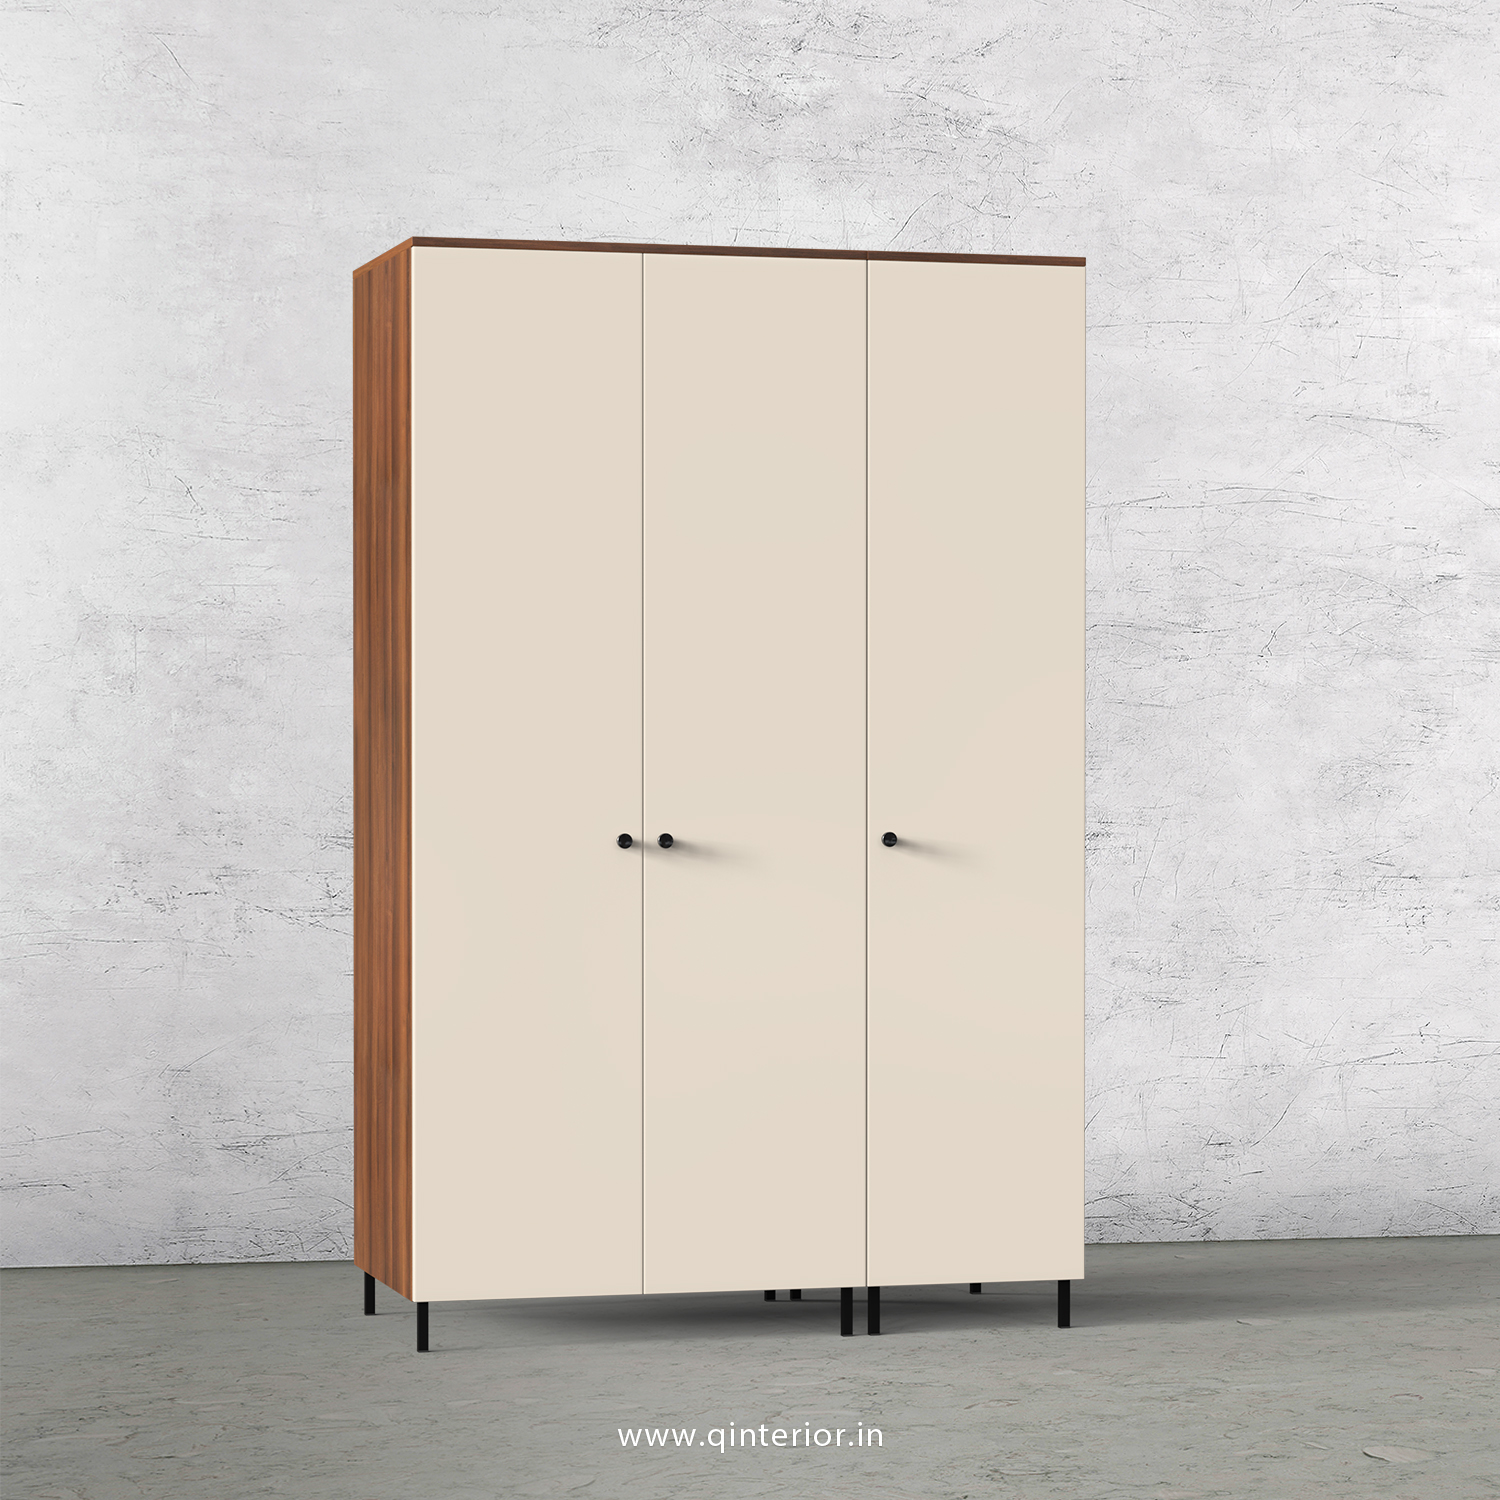 Lambent 3 Door Wardrobe in Teak and Ceramic Finish – TWRD001 C64